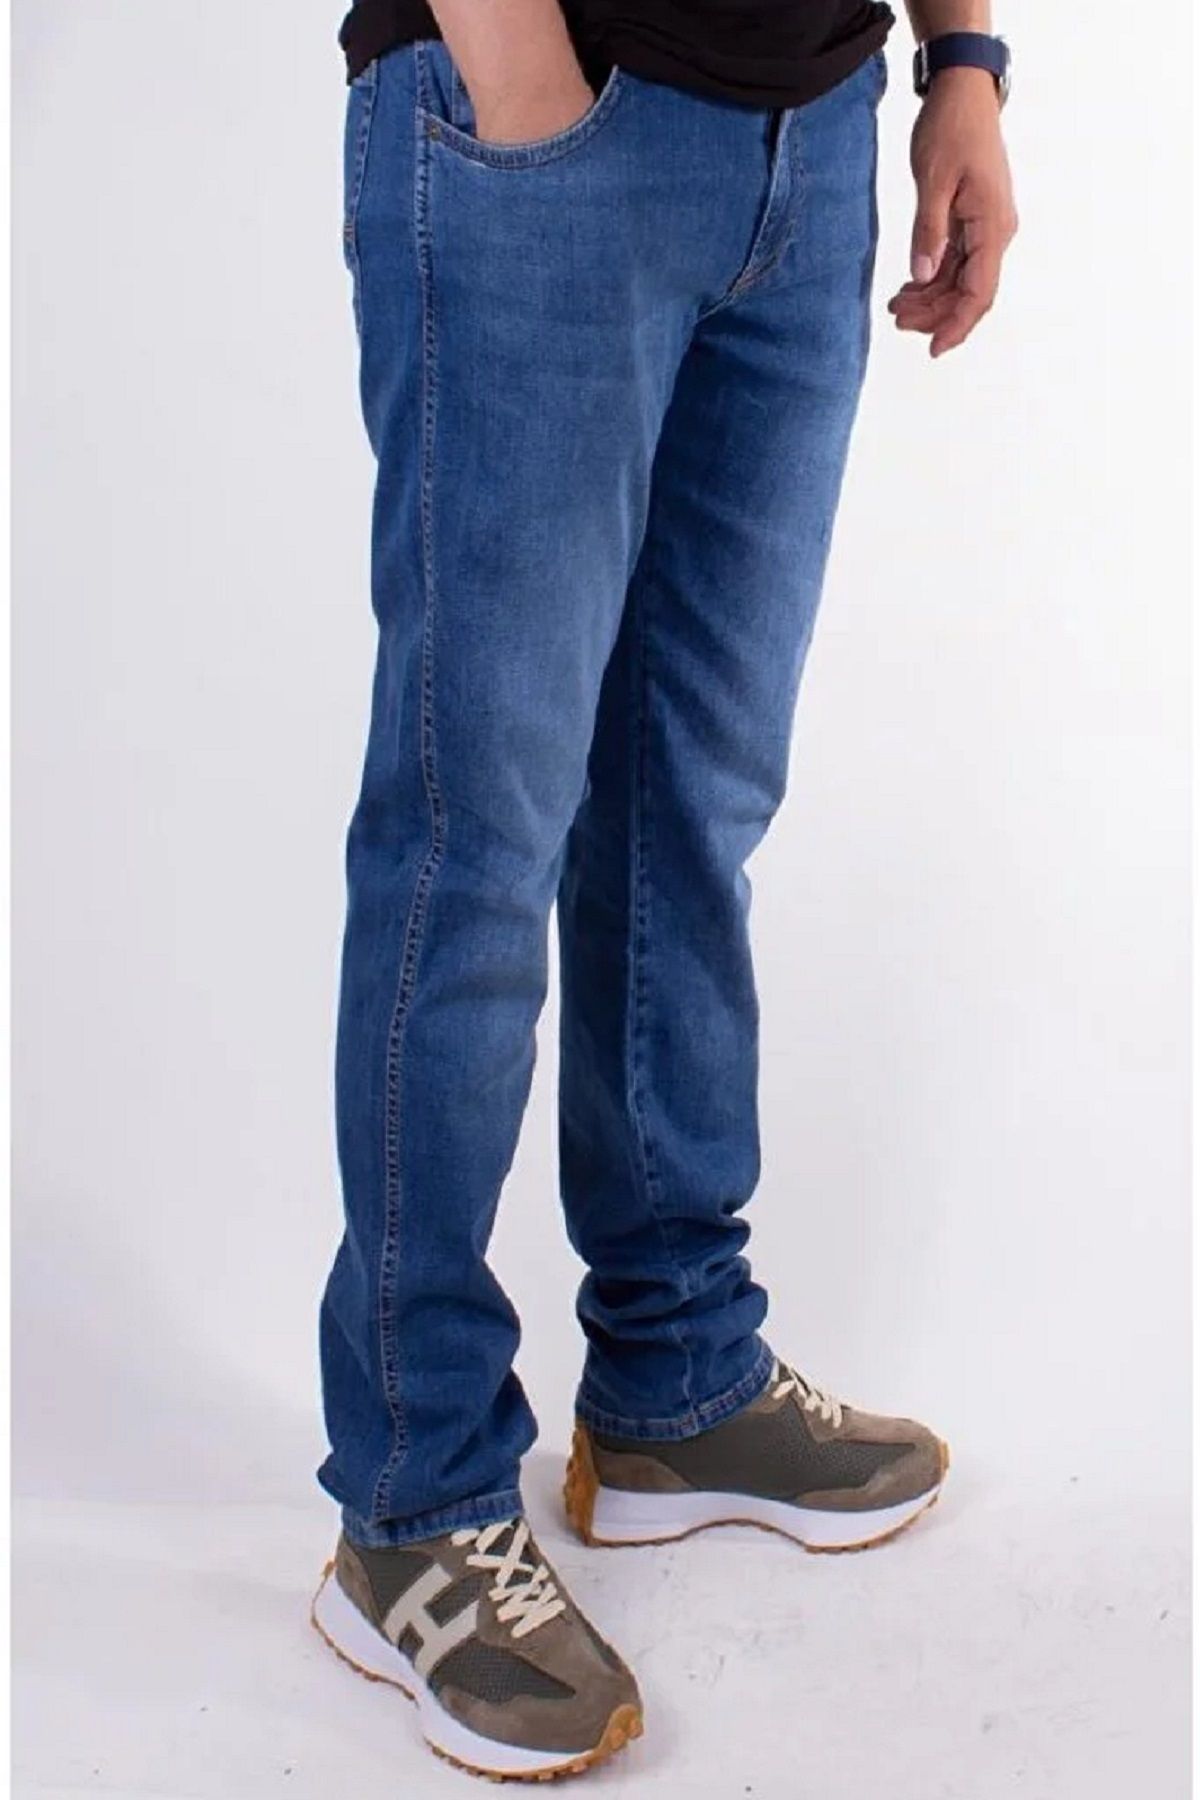 Twister Jeans ERKEK BÜYÜK BEDEN SÜPER BATTAL MAVİ RAHAT BEL-PAÇA TWİSTER JEANS PANTOLON VEGAS 132-07 SB BLUE